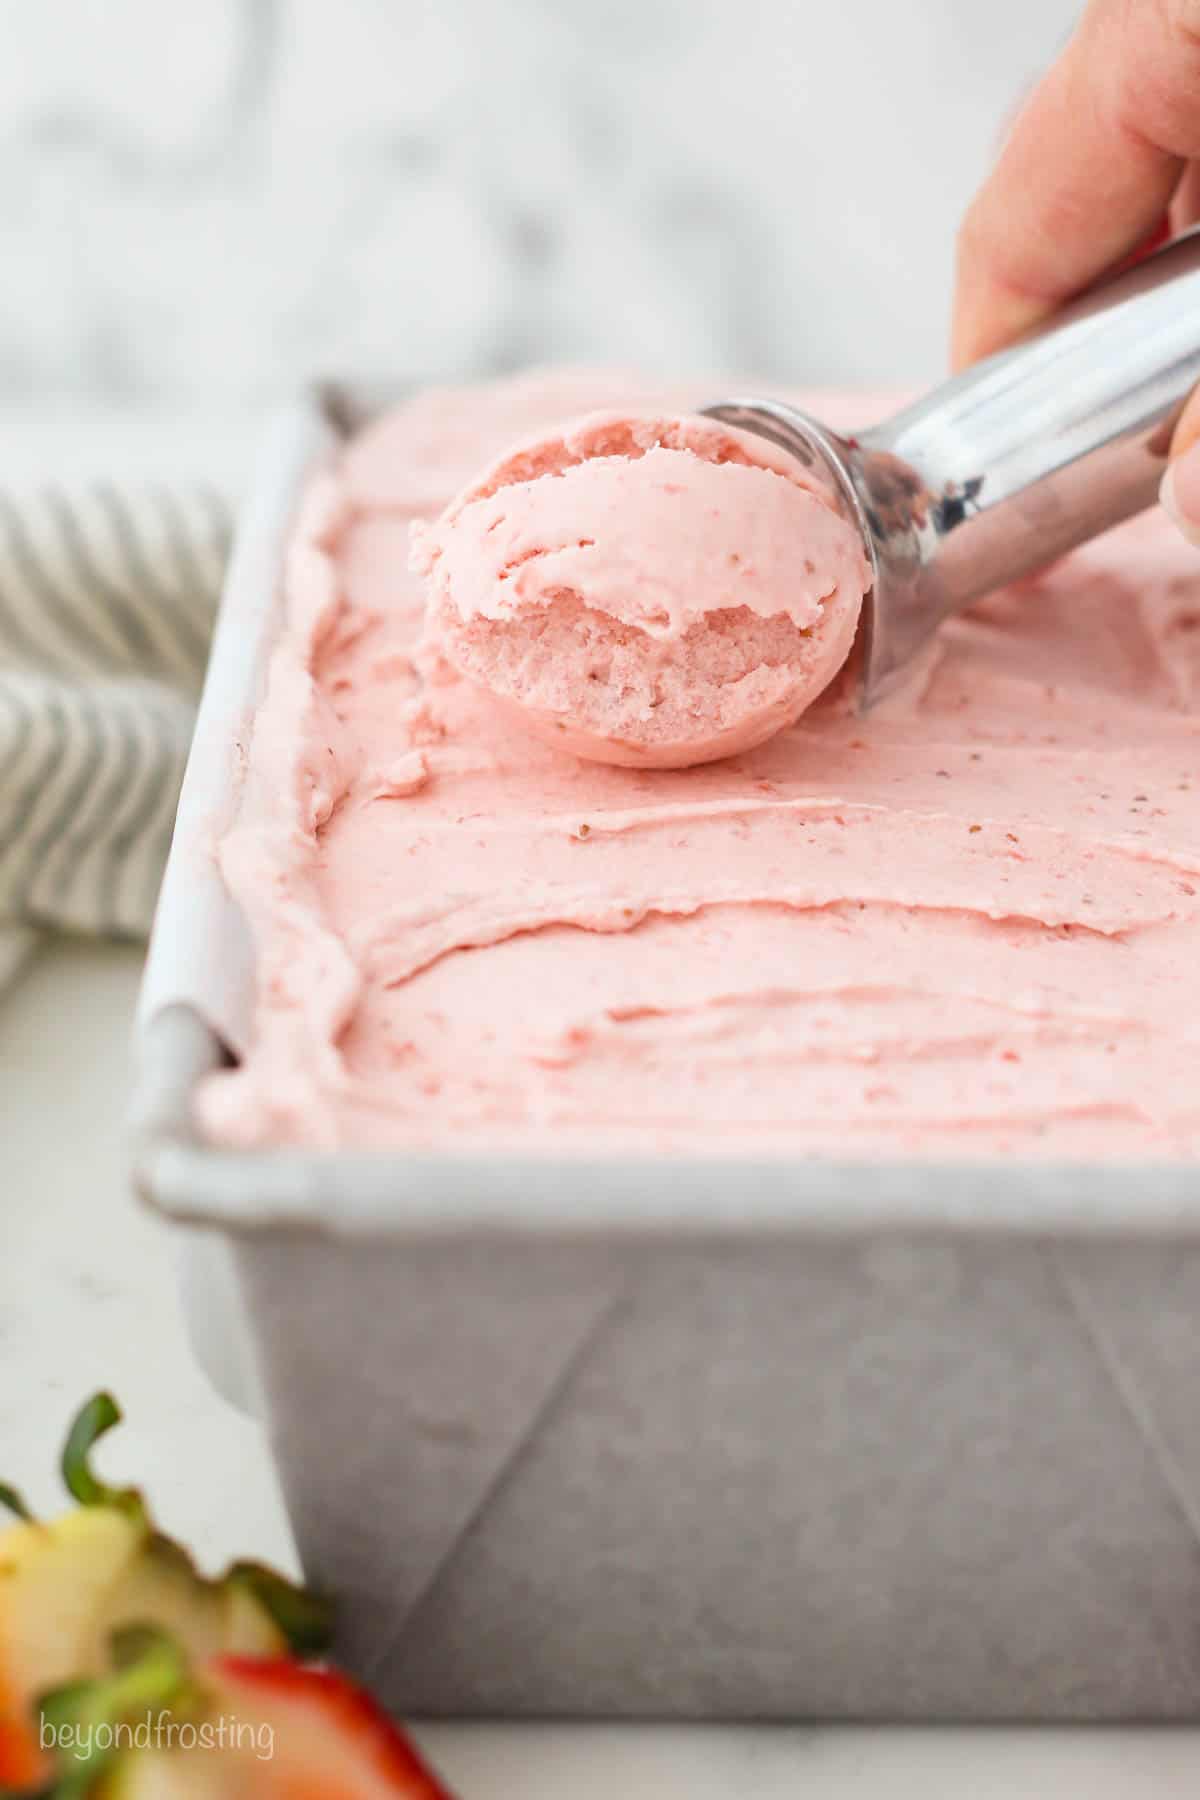 An ice cream scoop scooping strawberry ice cream